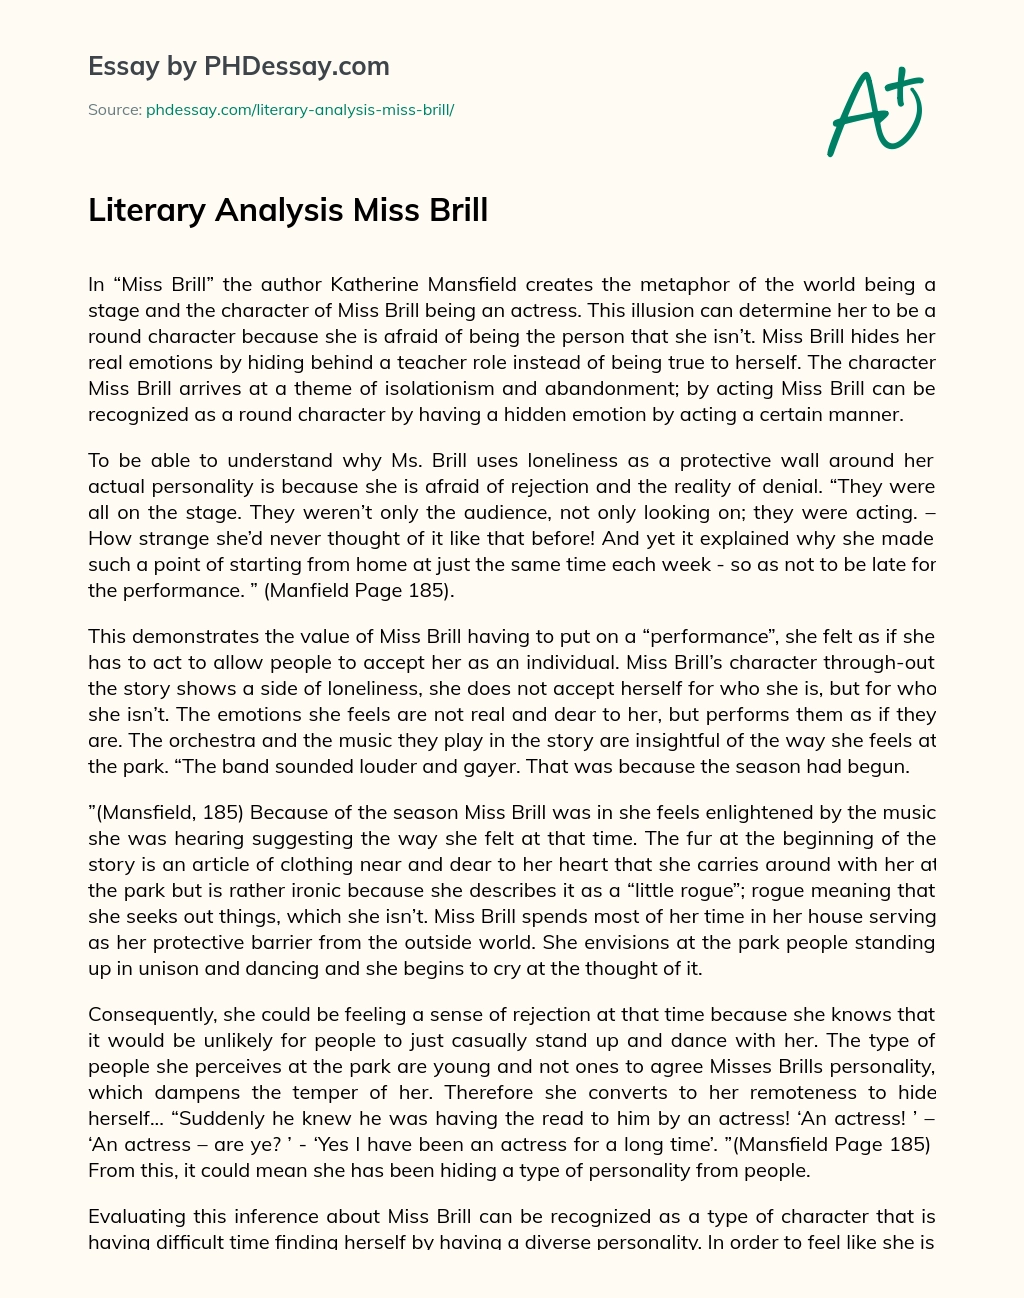 Literary Analysis Miss Brill